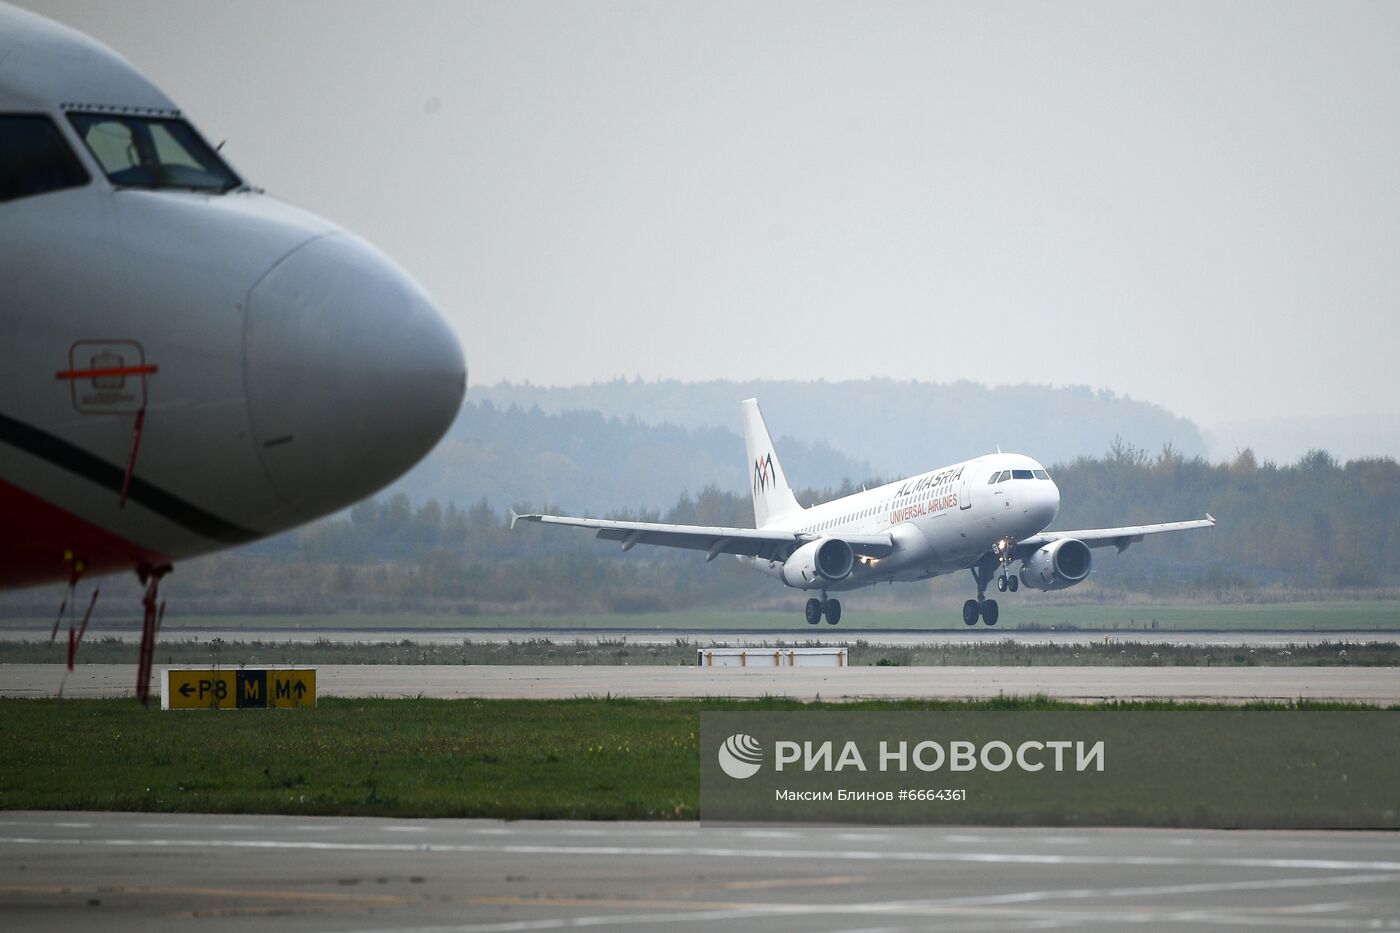 Авиакомпания AlMasria Universal Airlines начинает летать в аэропорт Домодедово